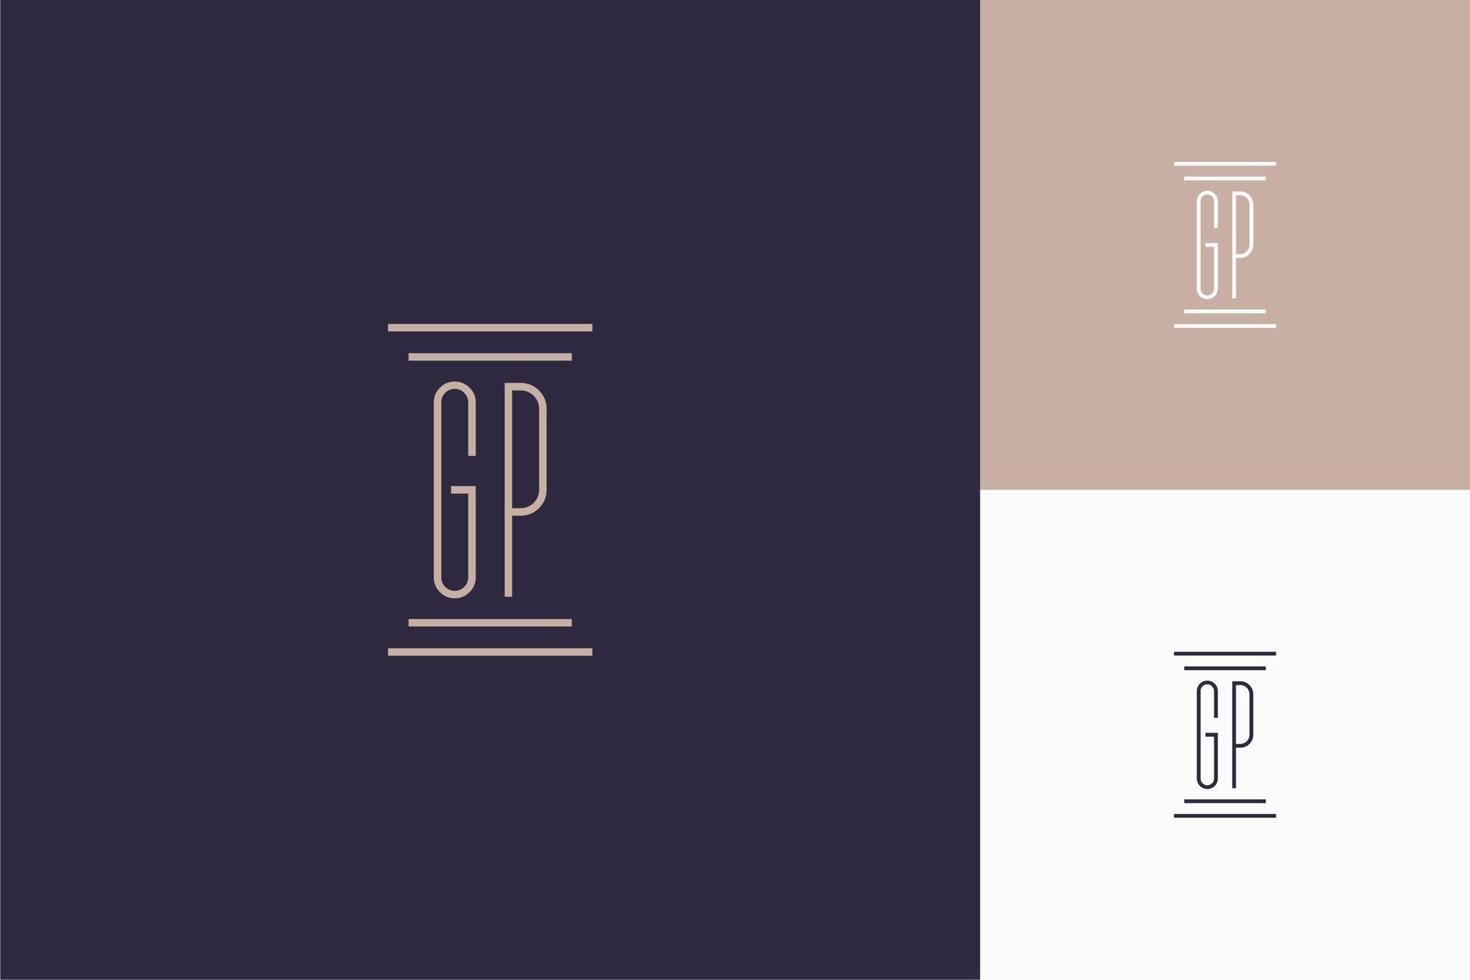 diseño de iniciales de monograma gp para logotipo de bufete de abogados vector